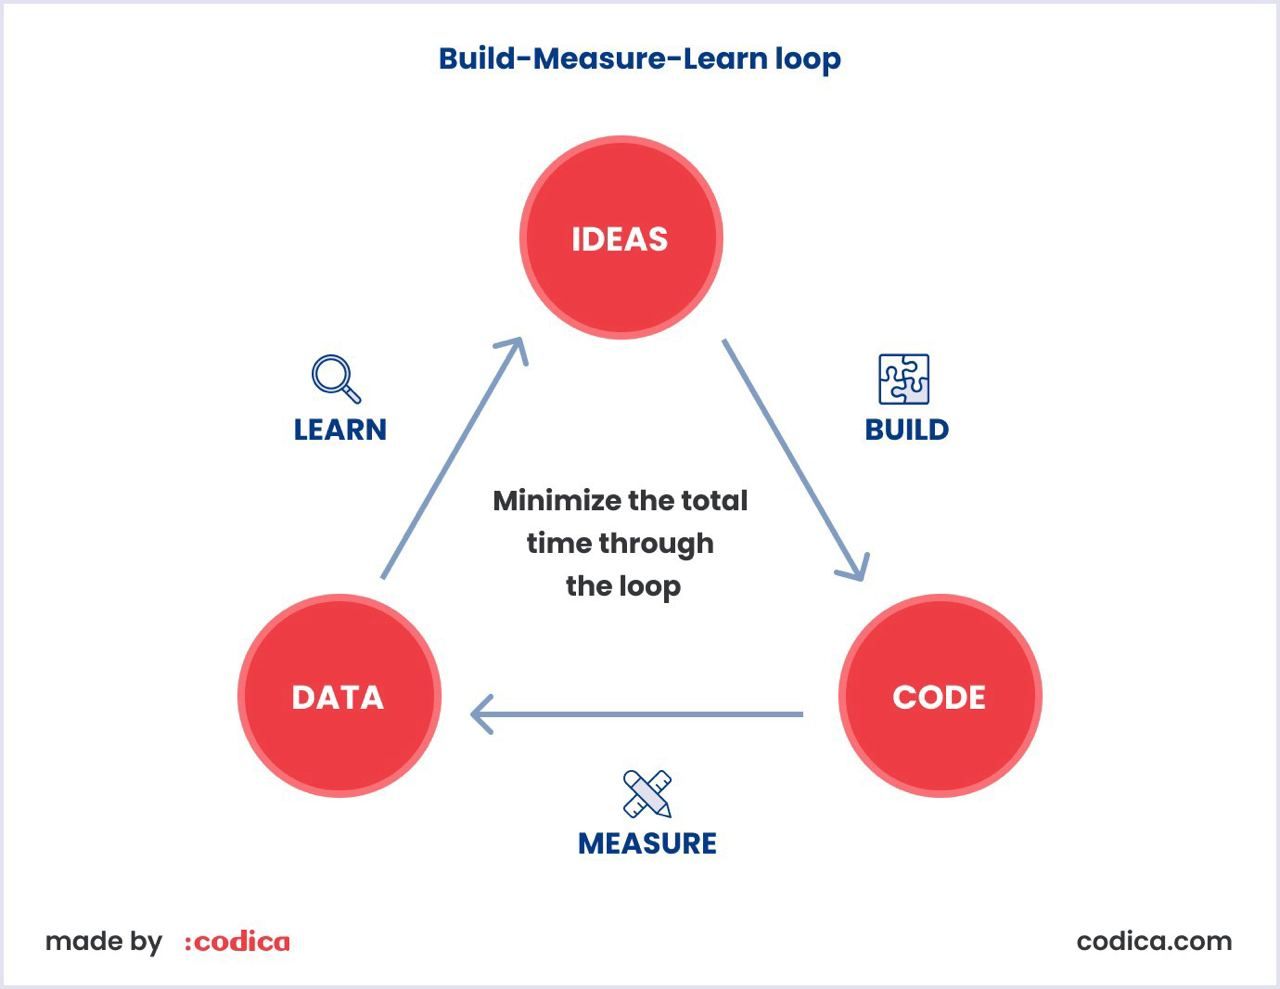 Example of build-measure-learn loop